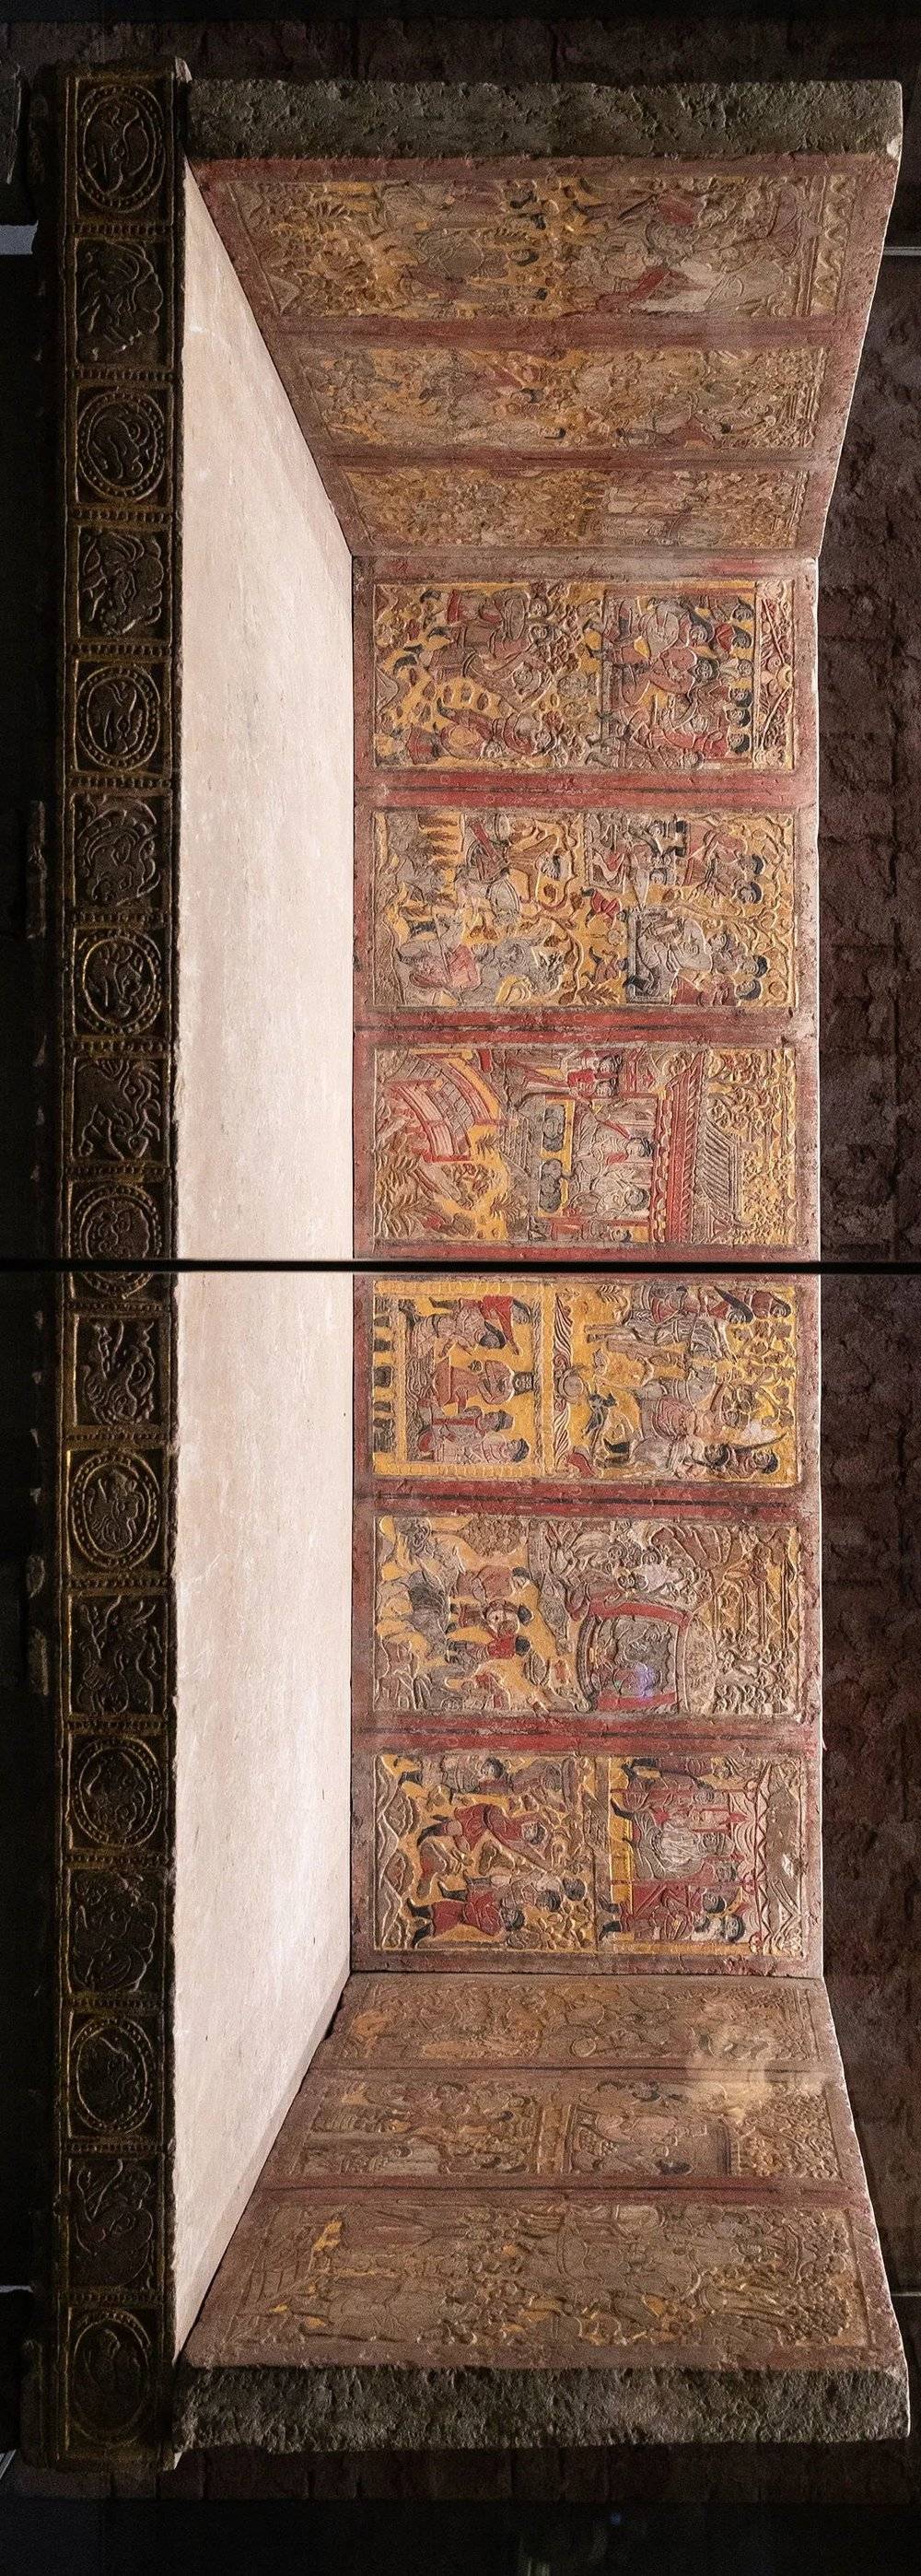 北周彩绘贴金安伽墓围屏石榻，陕西历史博物馆藏。摄影/柳叶氘